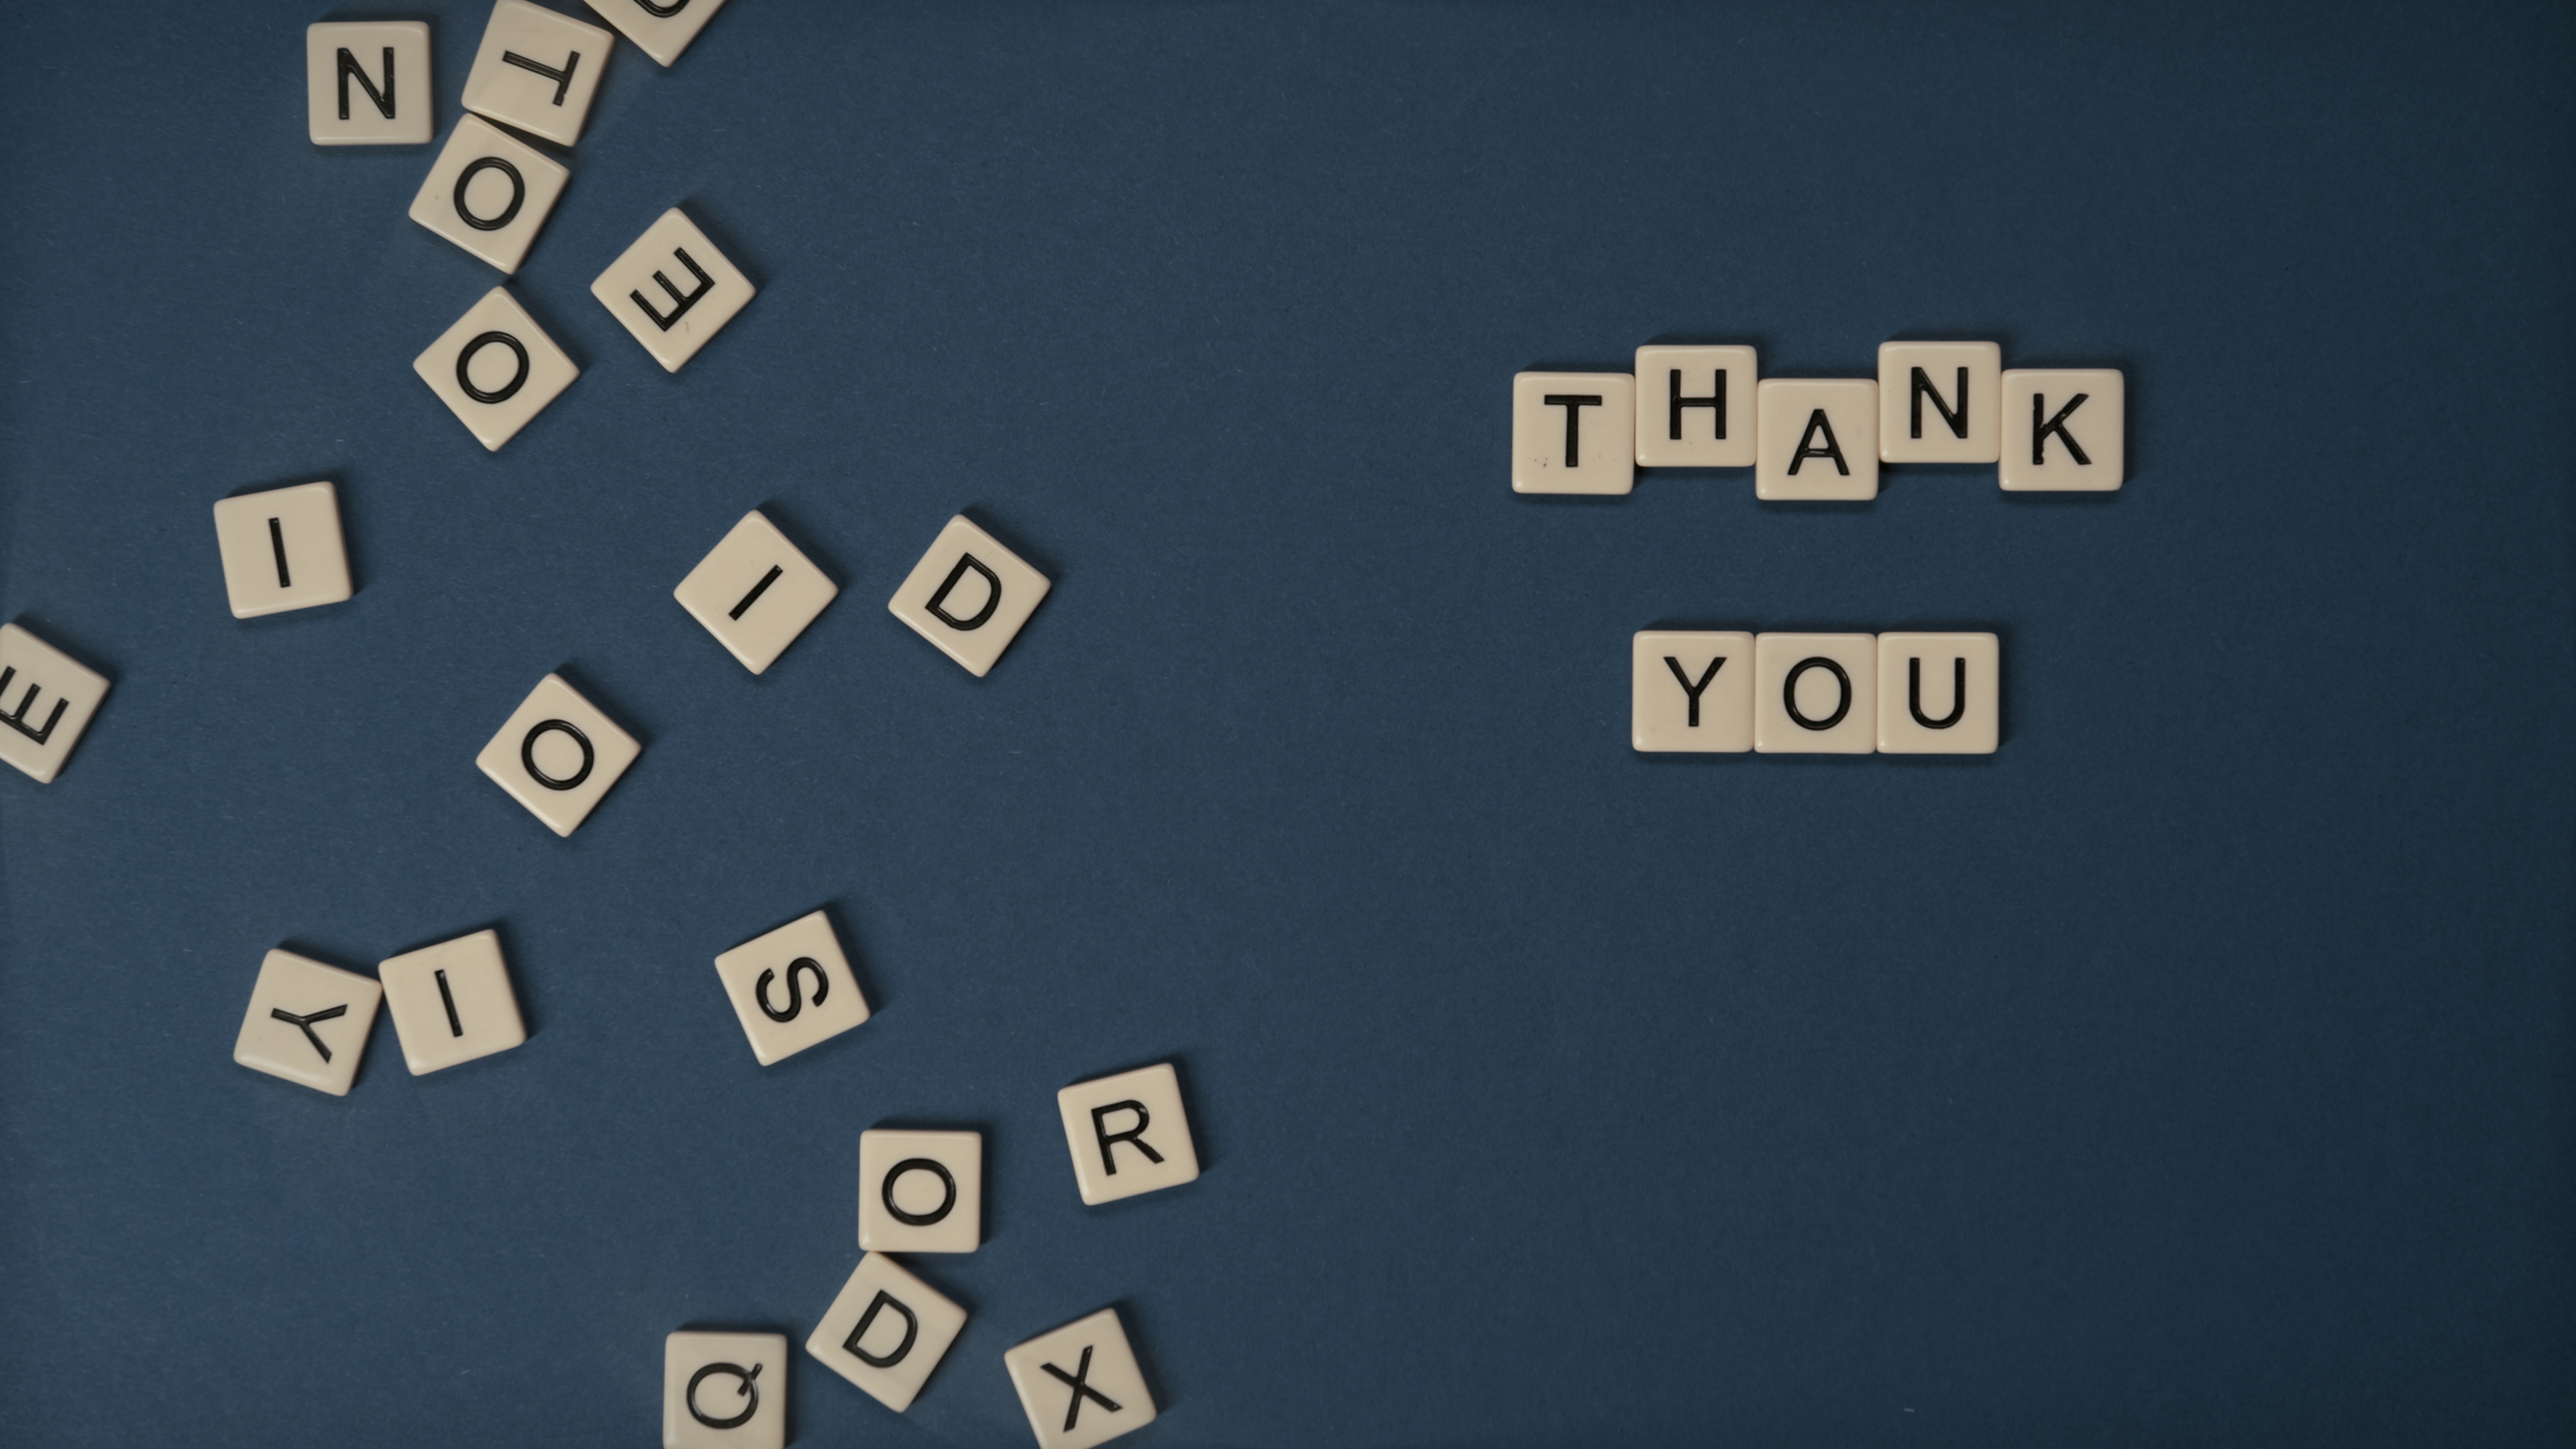 Gratitude: Thank-You message, Appreciative, Gratefulness, The right attitude. 3840x2160 4K Wallpaper.